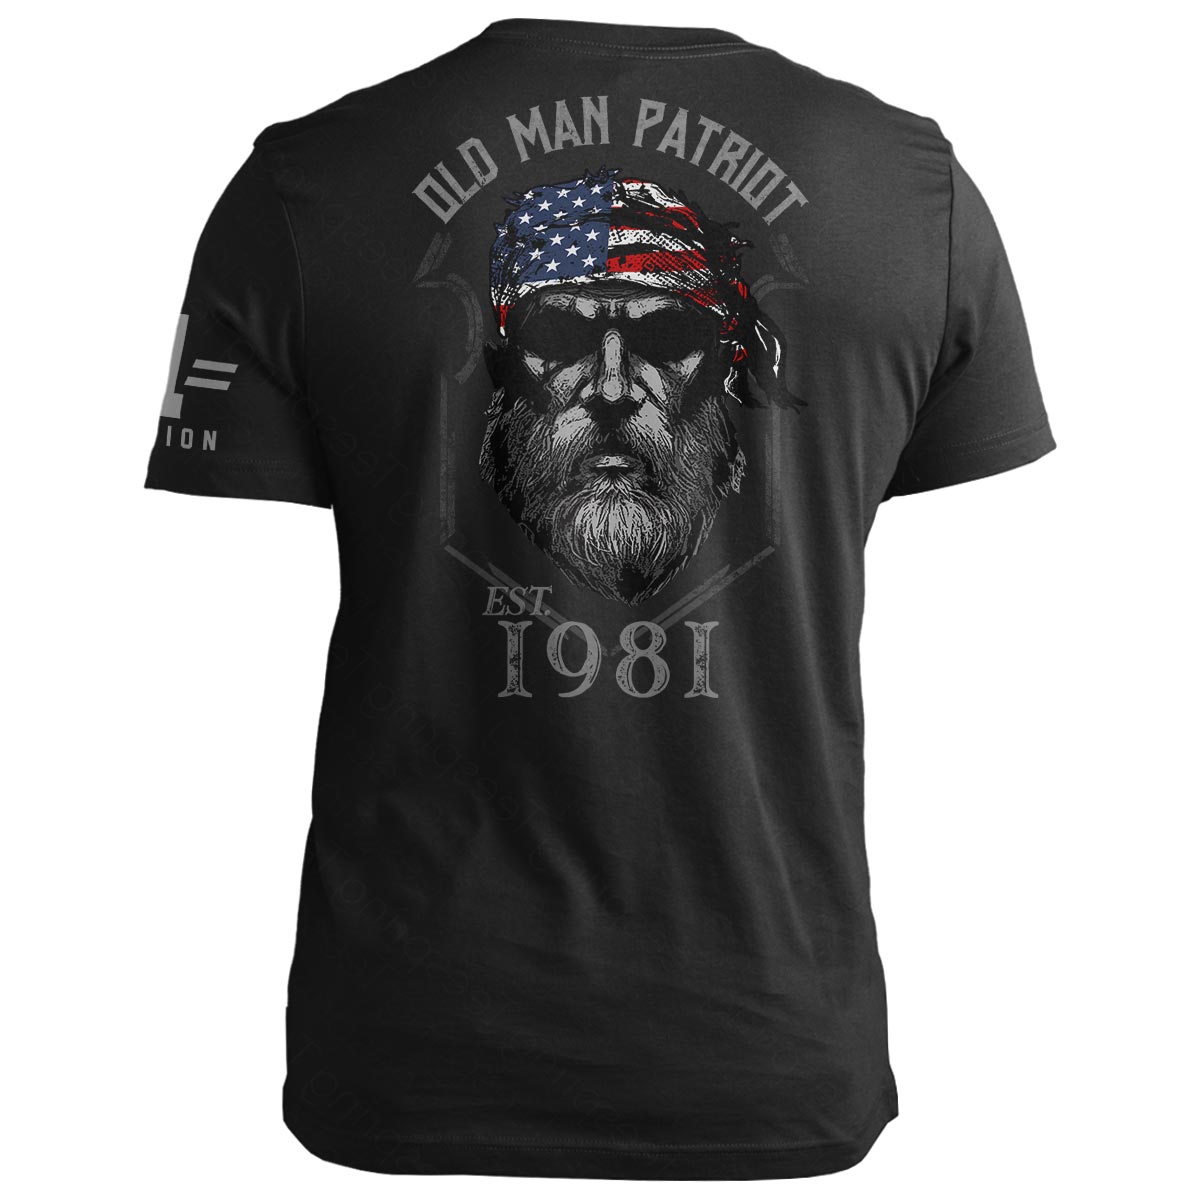 1981 Old Man Patriot